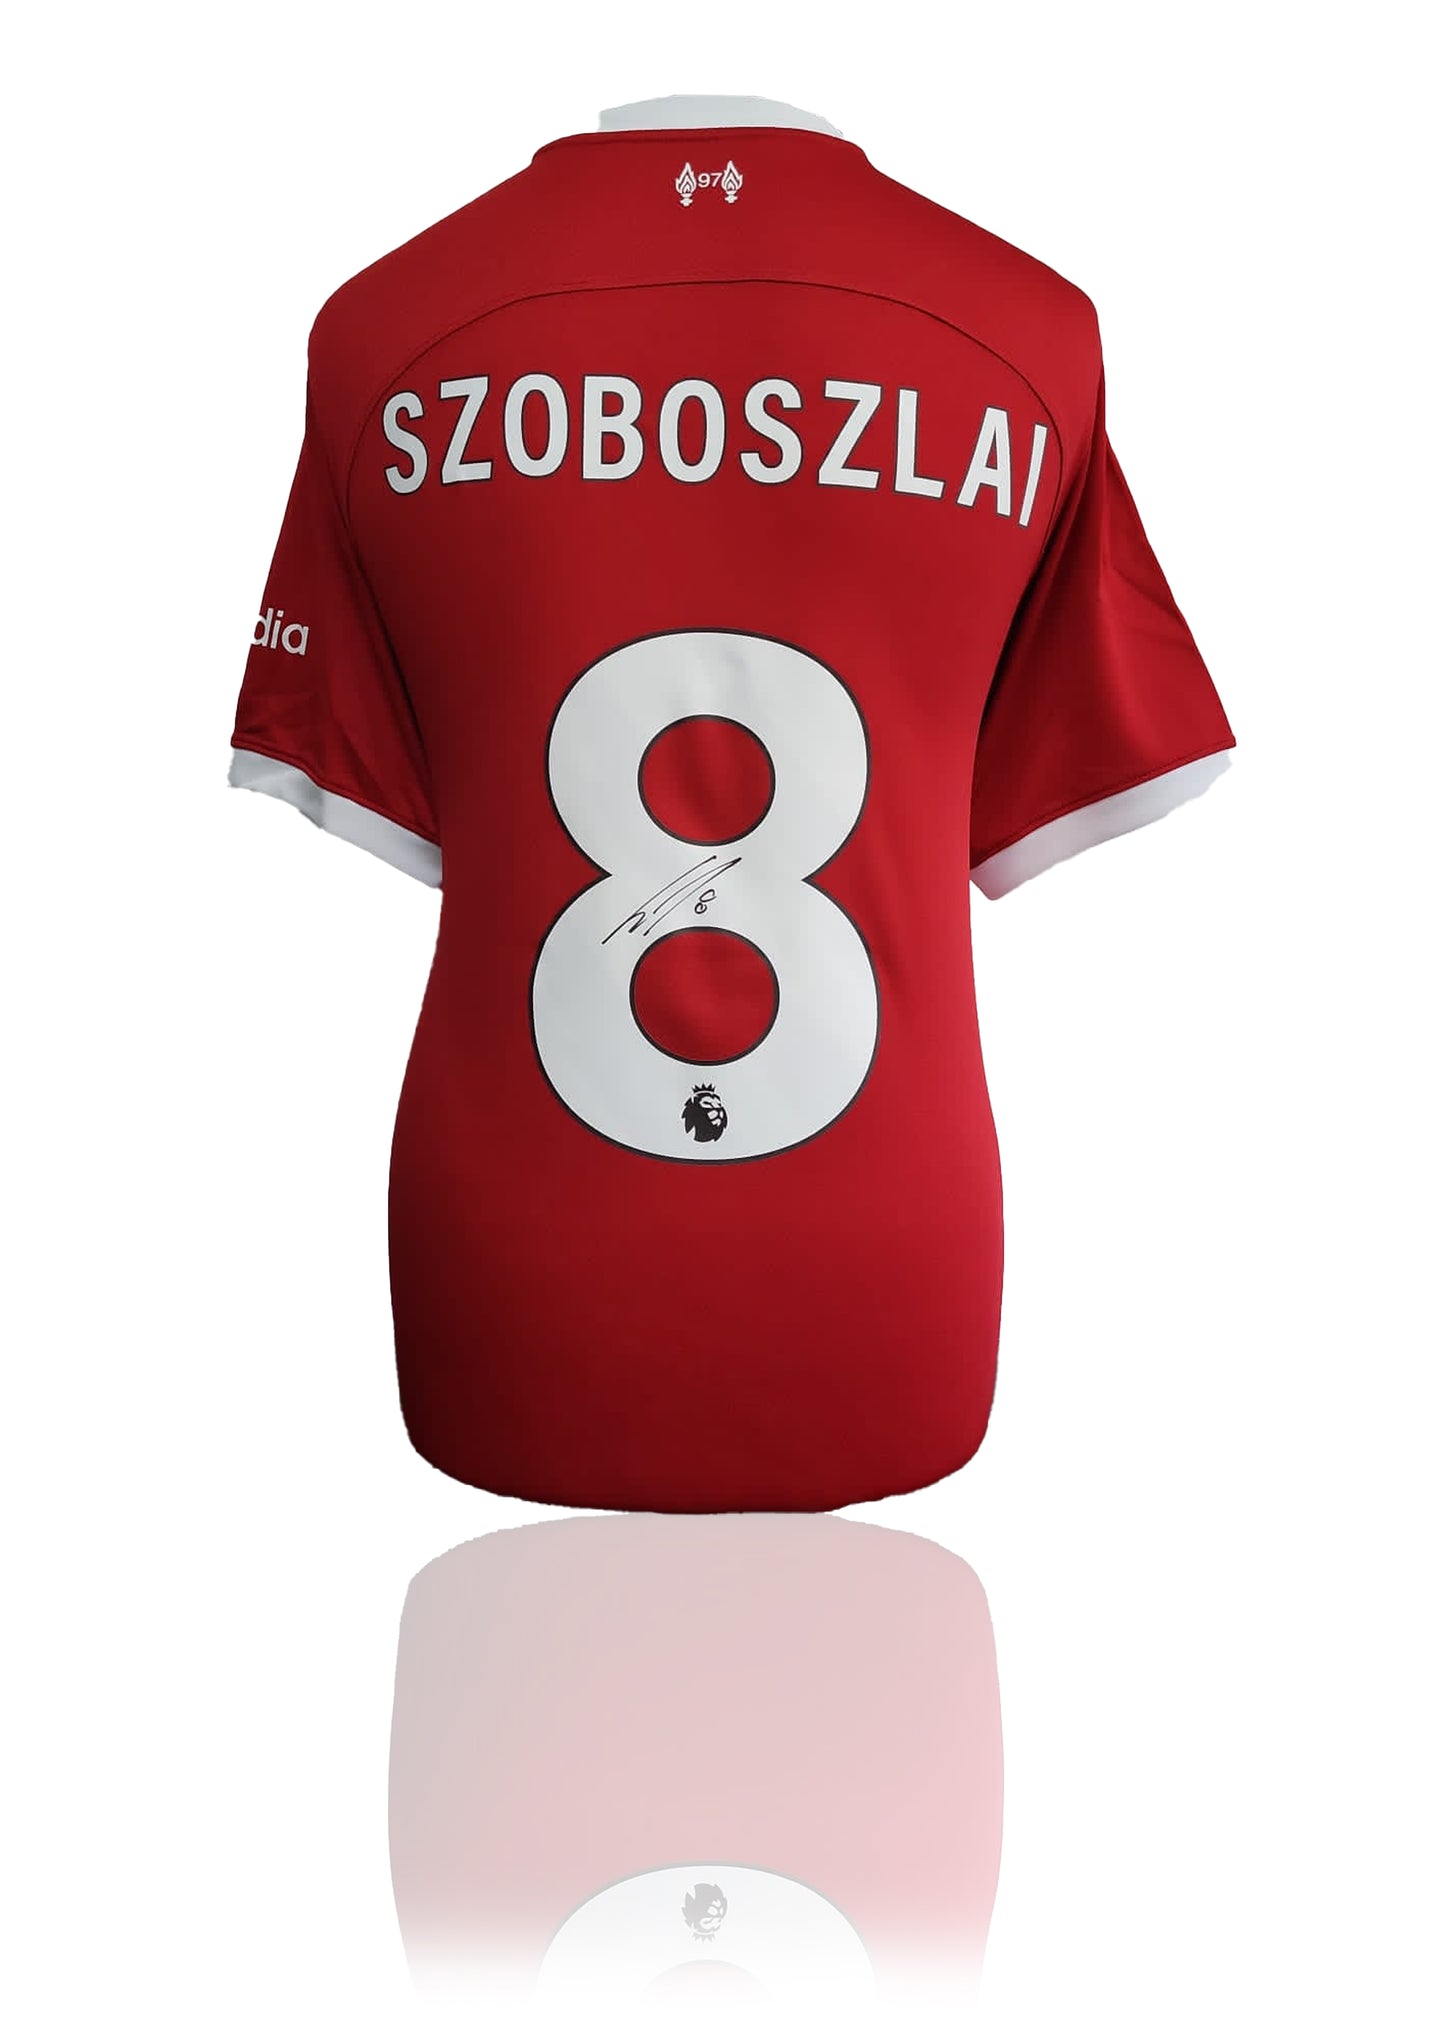 Dominik Szoboszlai Liverpool FC signed home kit shirt